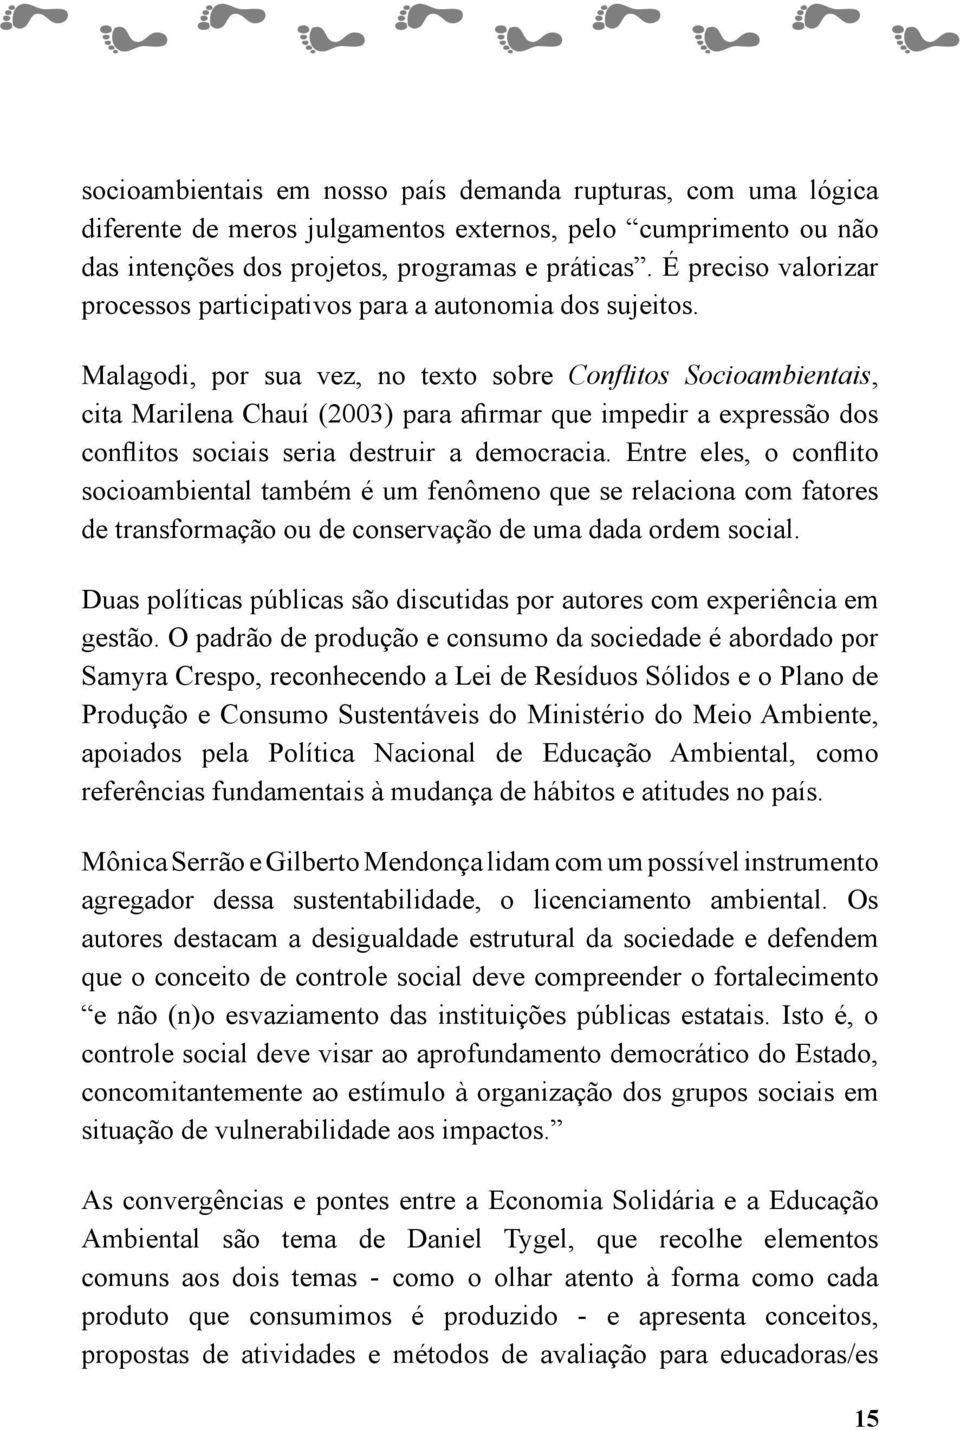 Malagodi, por sua vez, no texto sobre Conflitos Socioambientais, cita Marilena Chauí (2003) para afirmar que impedir a expressão dos conflitos sociais seria destruir a democracia.